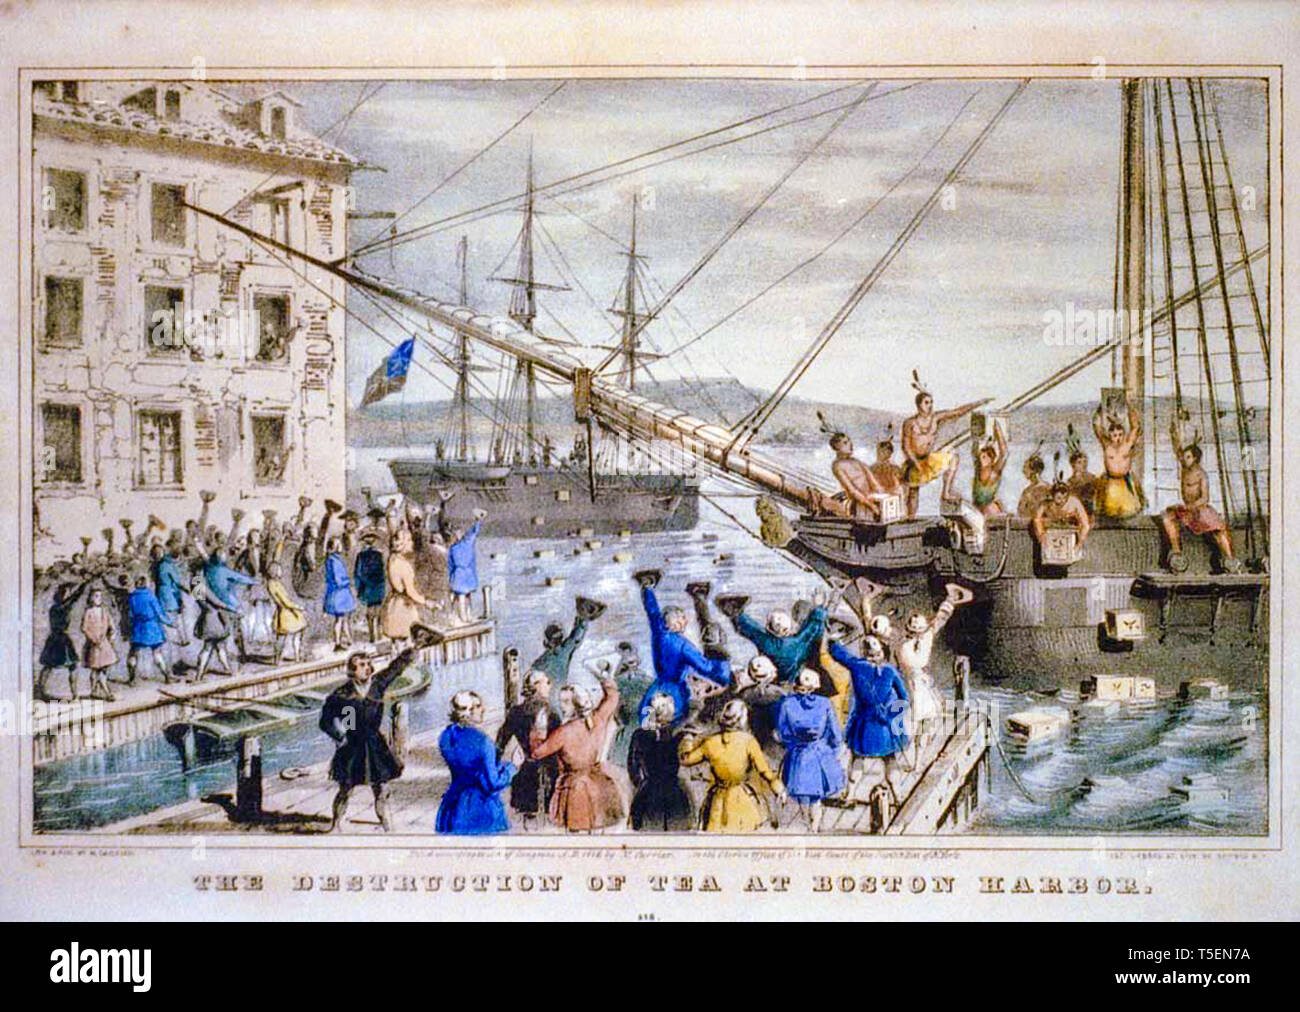 La destruction de thé, au Port de Boston, coloriés à la main illustrant la gravure 1773 Boston Tea Party, Nathaniel Currier, 1846 Banque D'Images